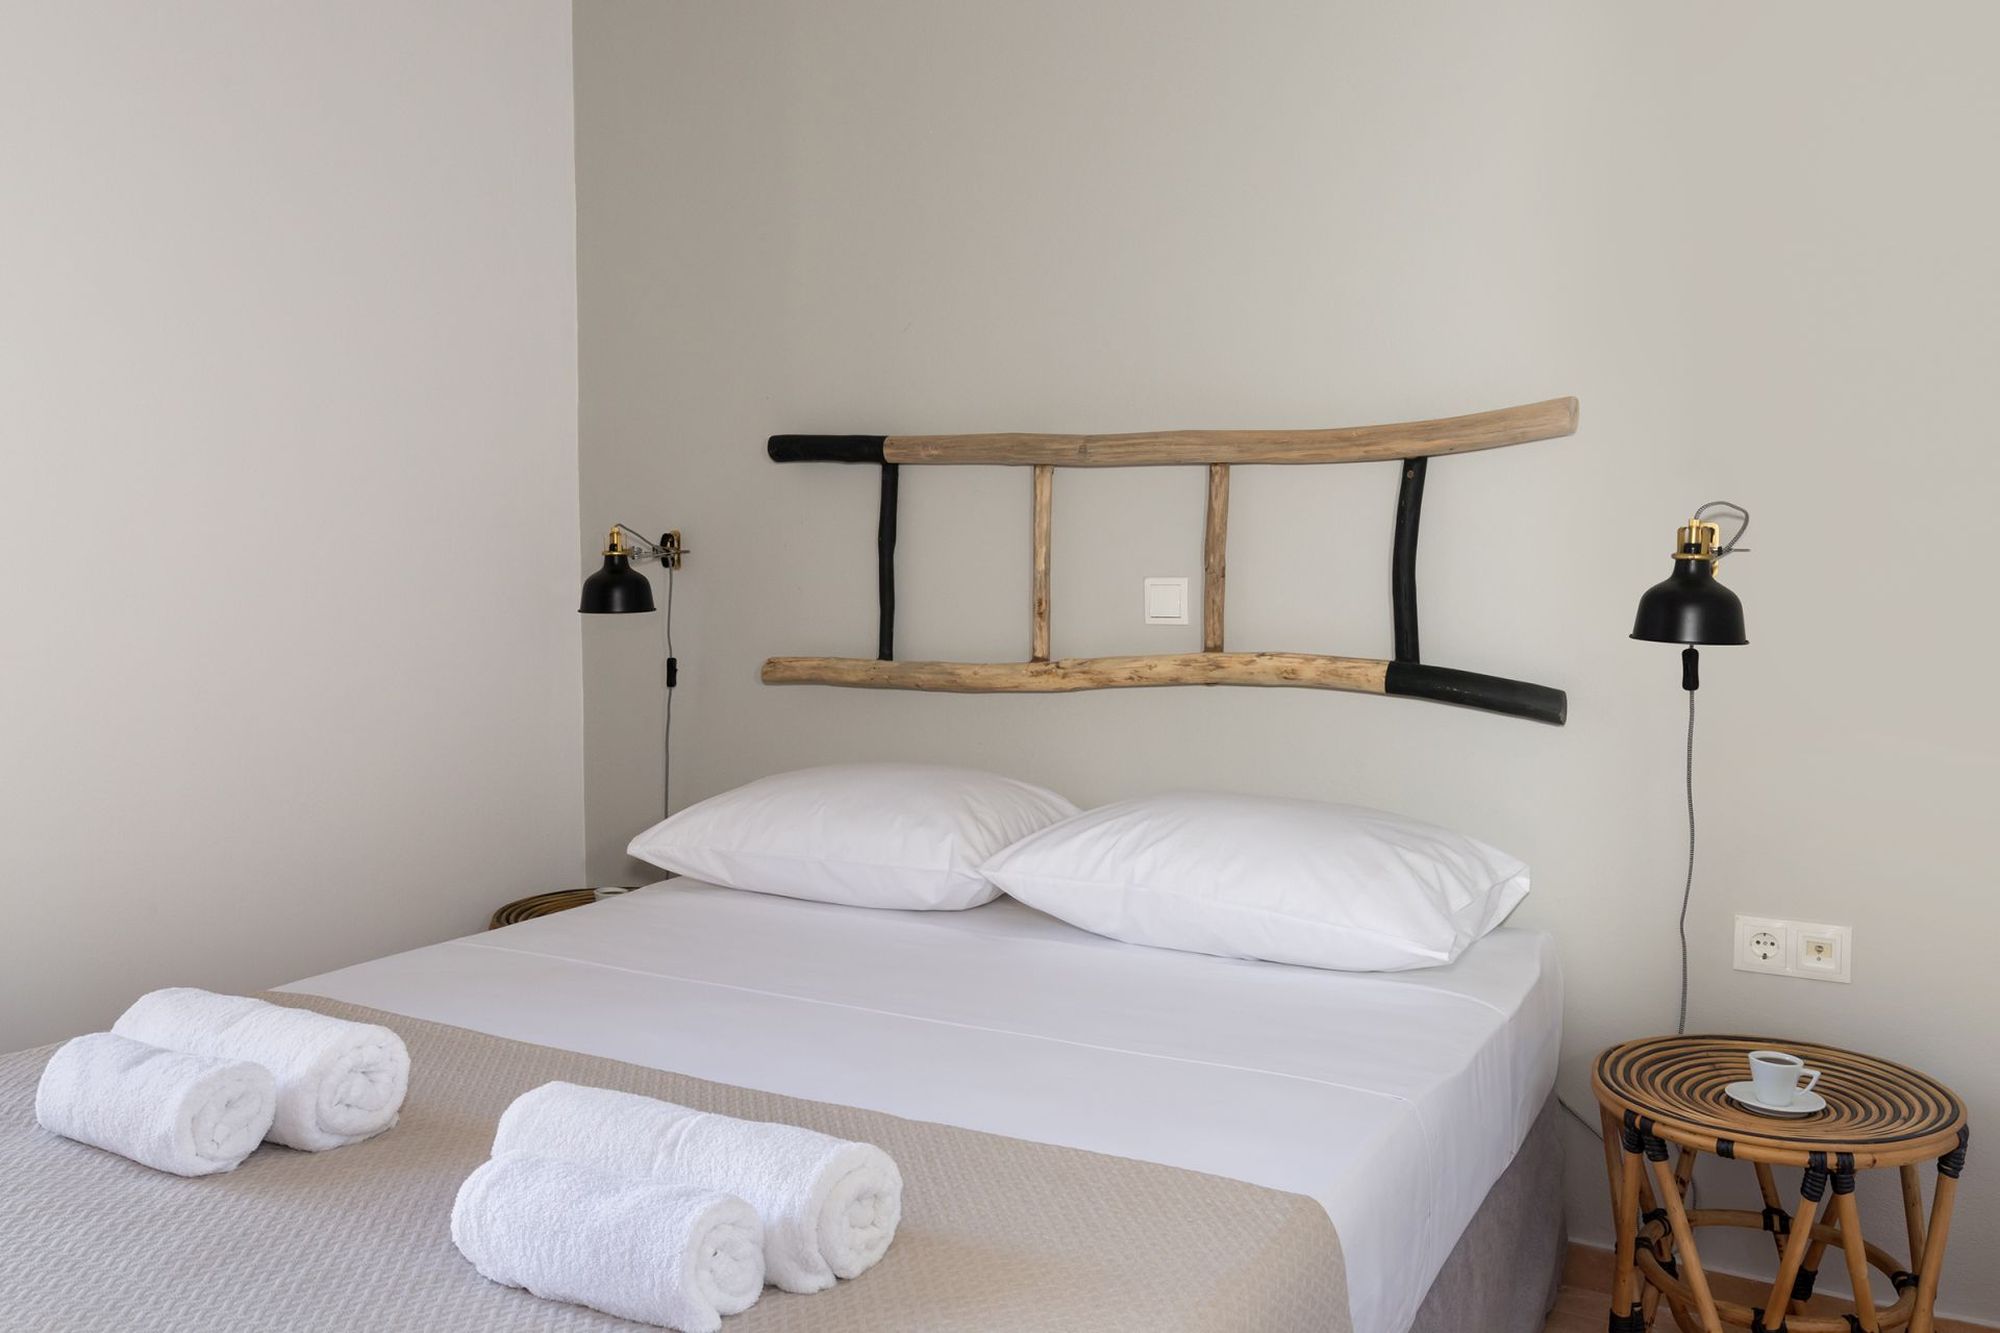 Υπνοδωμάτιο με διπλό κρεβάτι, ξύλινα κομοδίνα, μαύρα φωτιστικά τοίχου και μια διακοσμητική ξύλινη σκάλα στον τοίχο πάνω από το κρεβάτι.